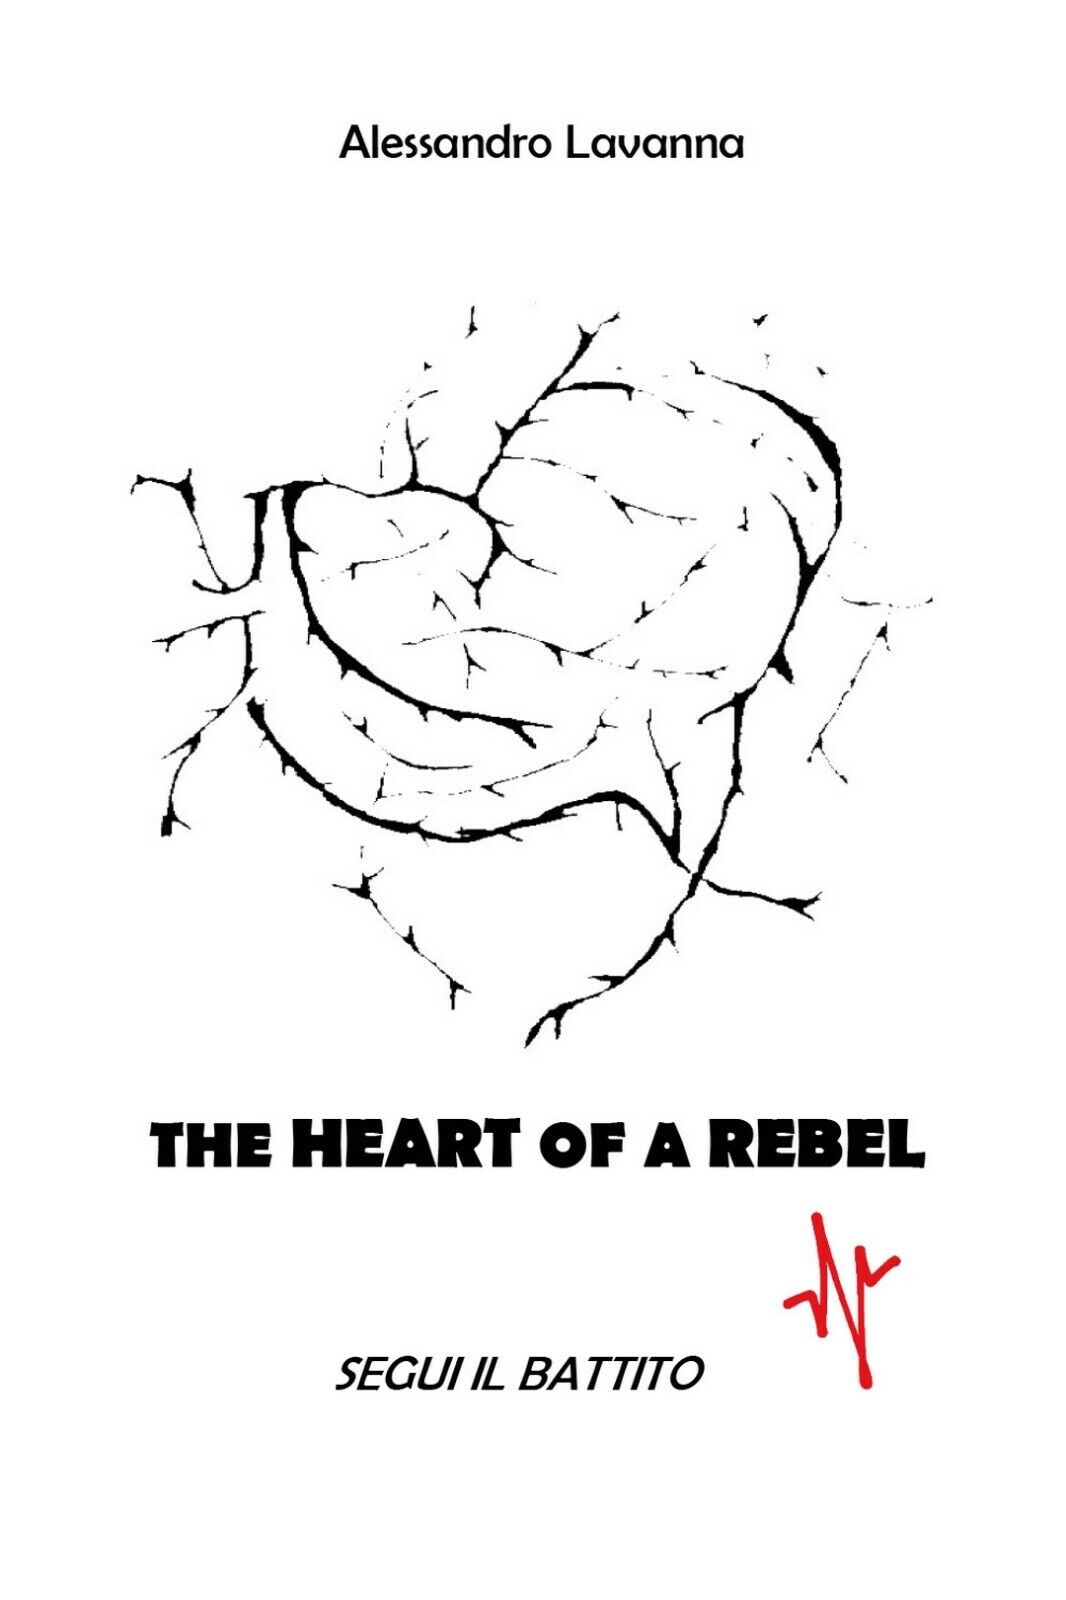 The Heart of a Rebel - segui il battito,  Alessandro Lavanna,  2021, Youcanprint